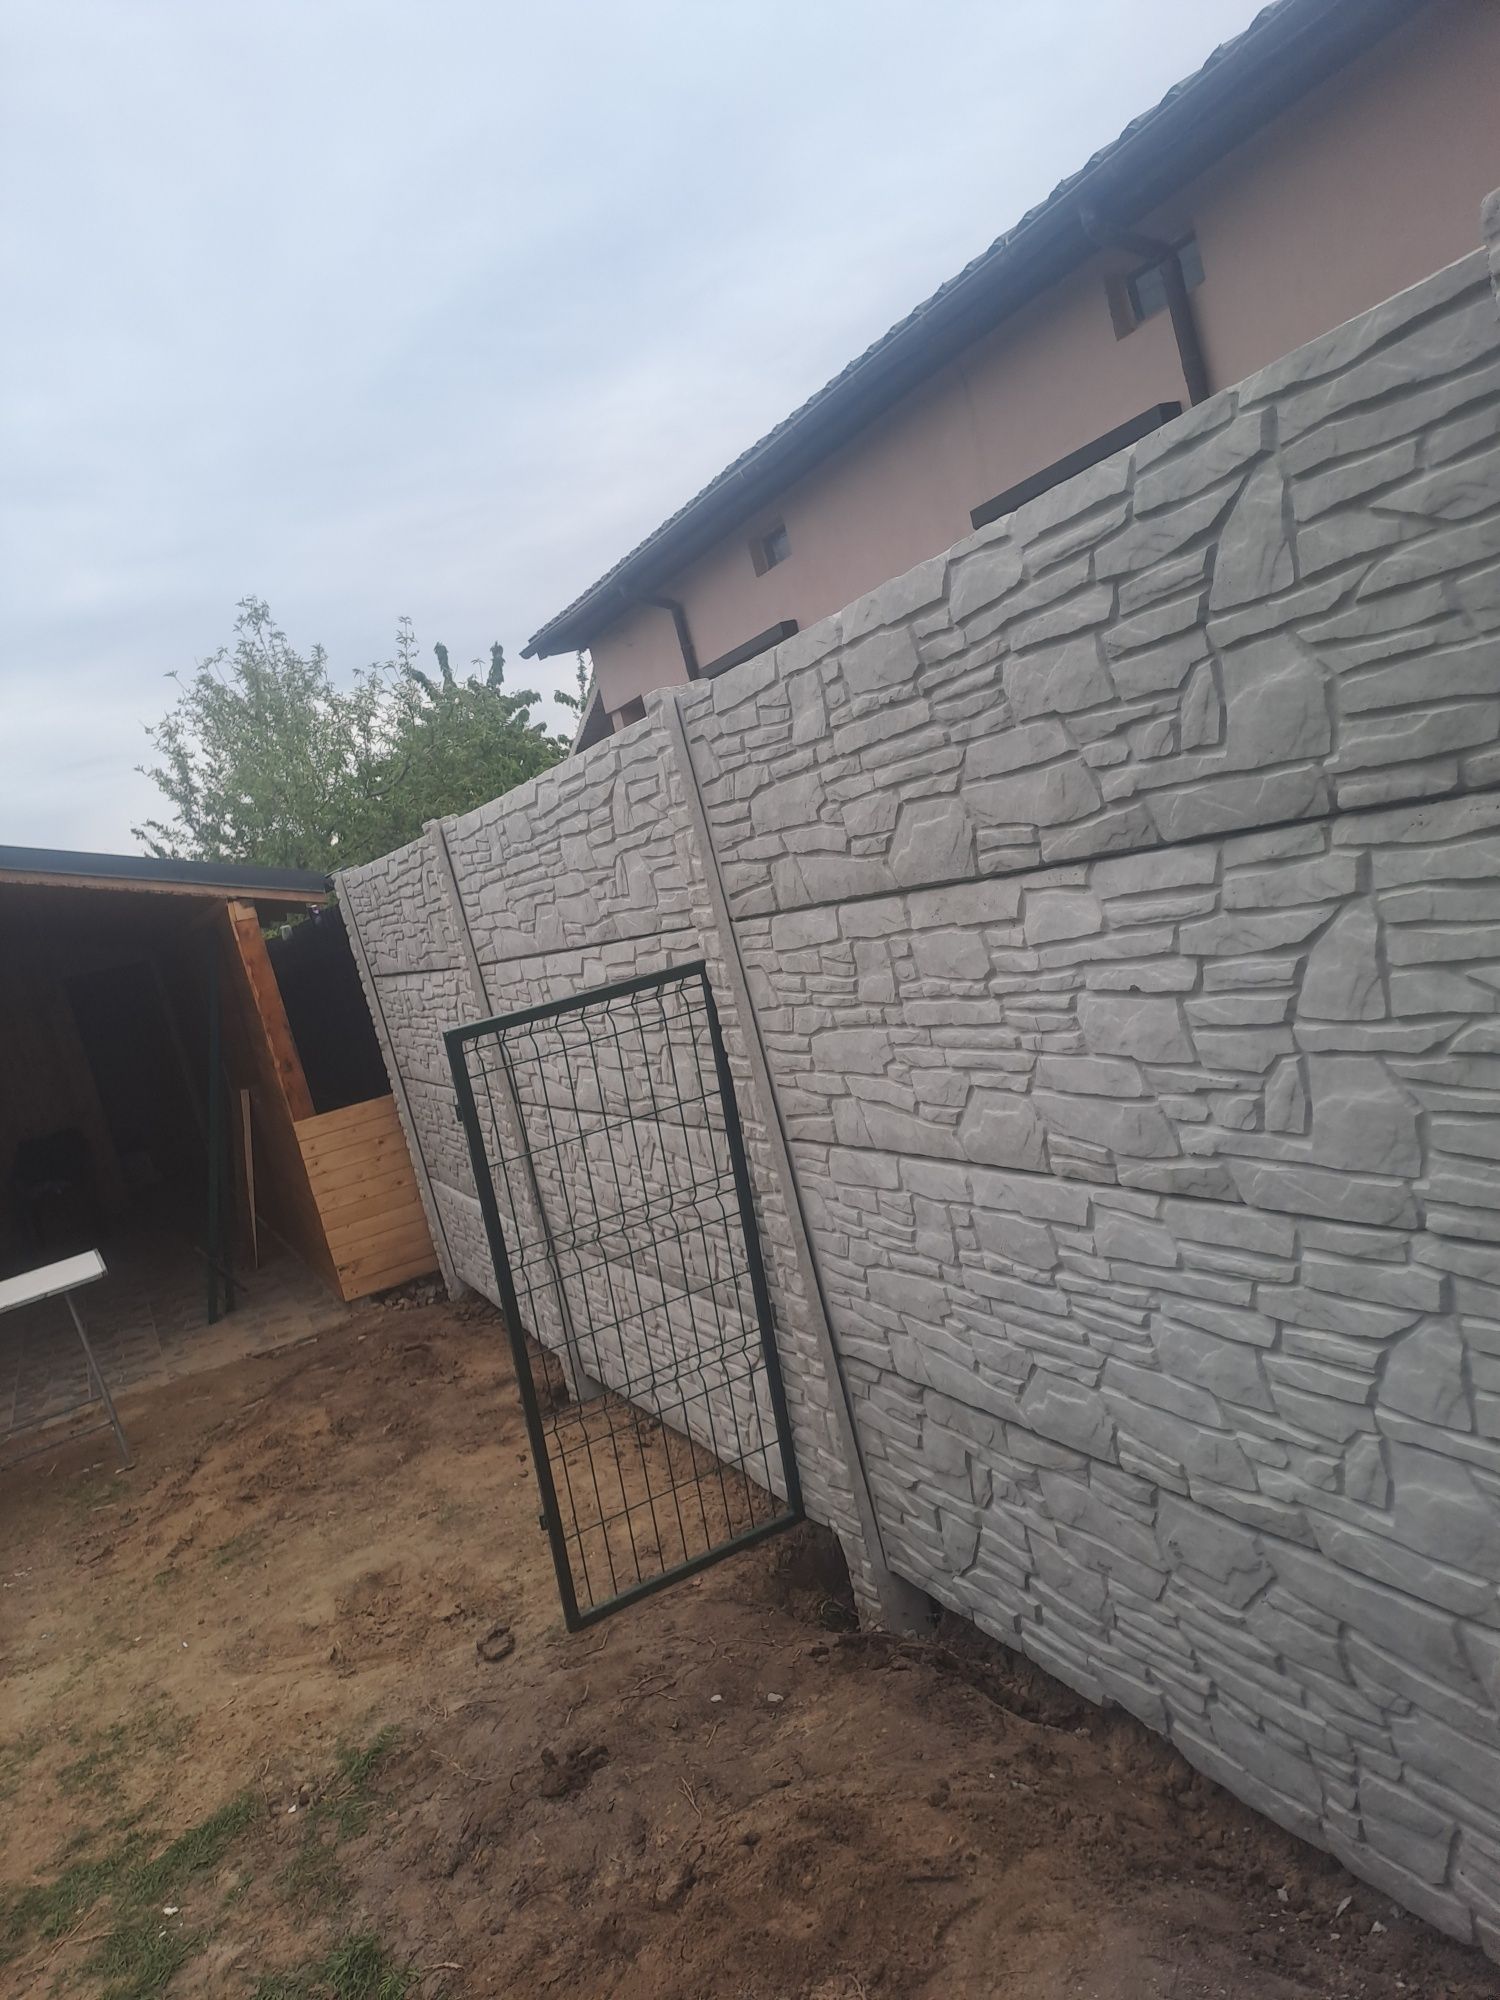 Gard beton foarte bine lucrat